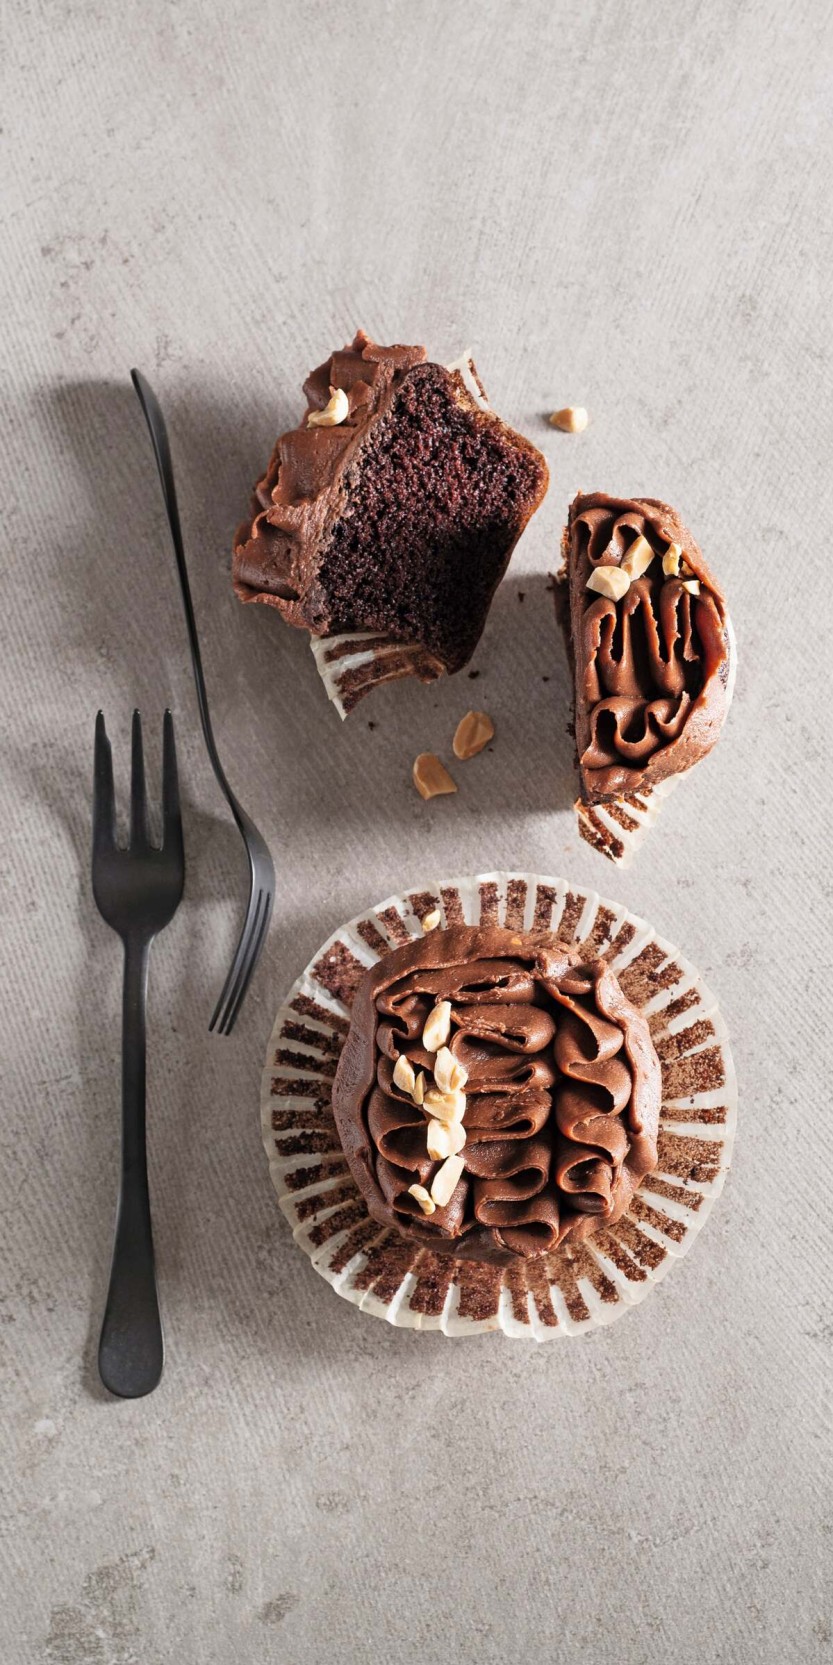 Cupcake al cioccolato e arachidi, ricetta tratta da "Cioccolato"